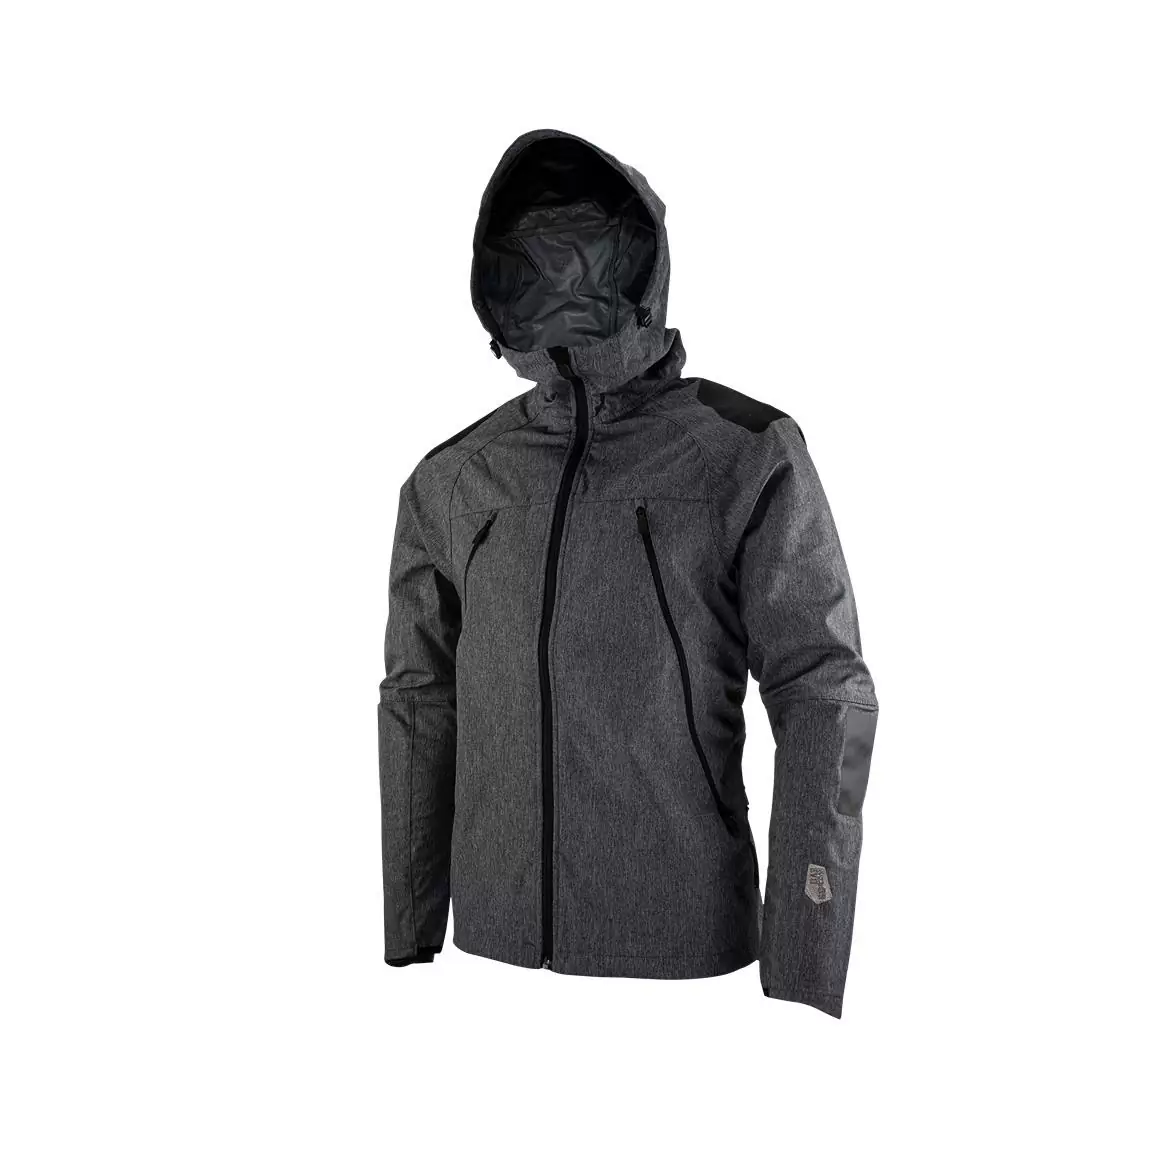 Mtb Hydradri 4.0 waterproof jacket Black size M #2